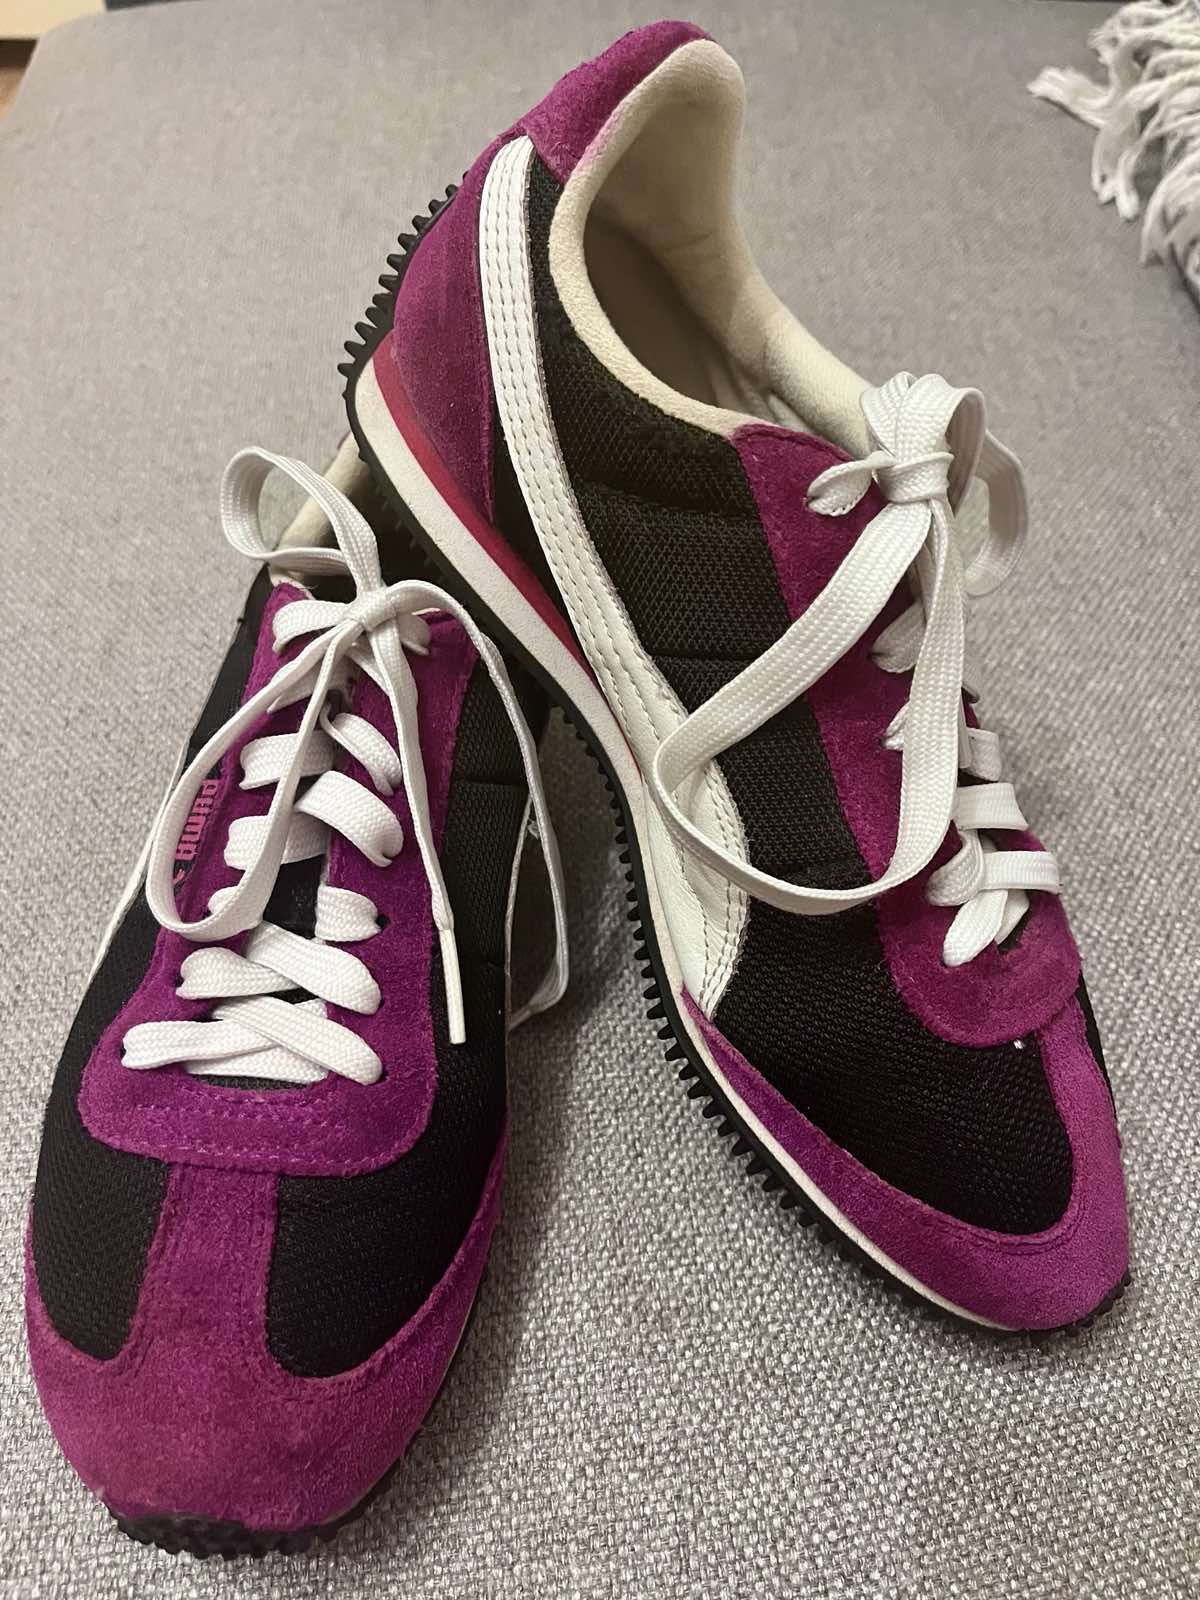 Кроссовки Puma, Adidas женские подростковые туфли кеды ботинки